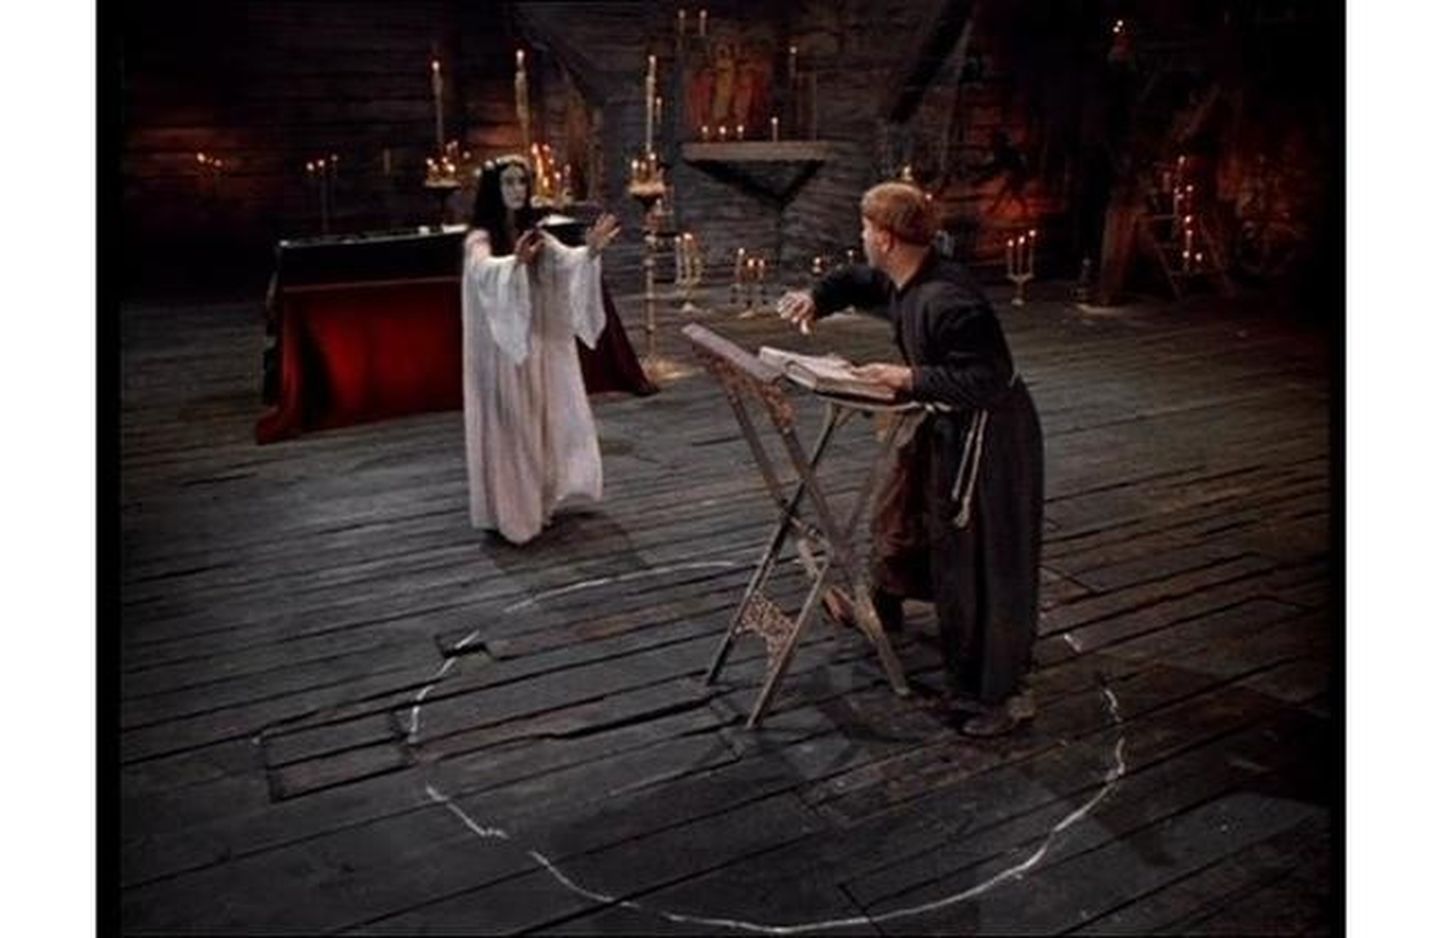 Кадр из фильма "Вий", когда семинарист Хома нарисовал на полу в церквушке меловой круг, чтобы защититься от нечисти.